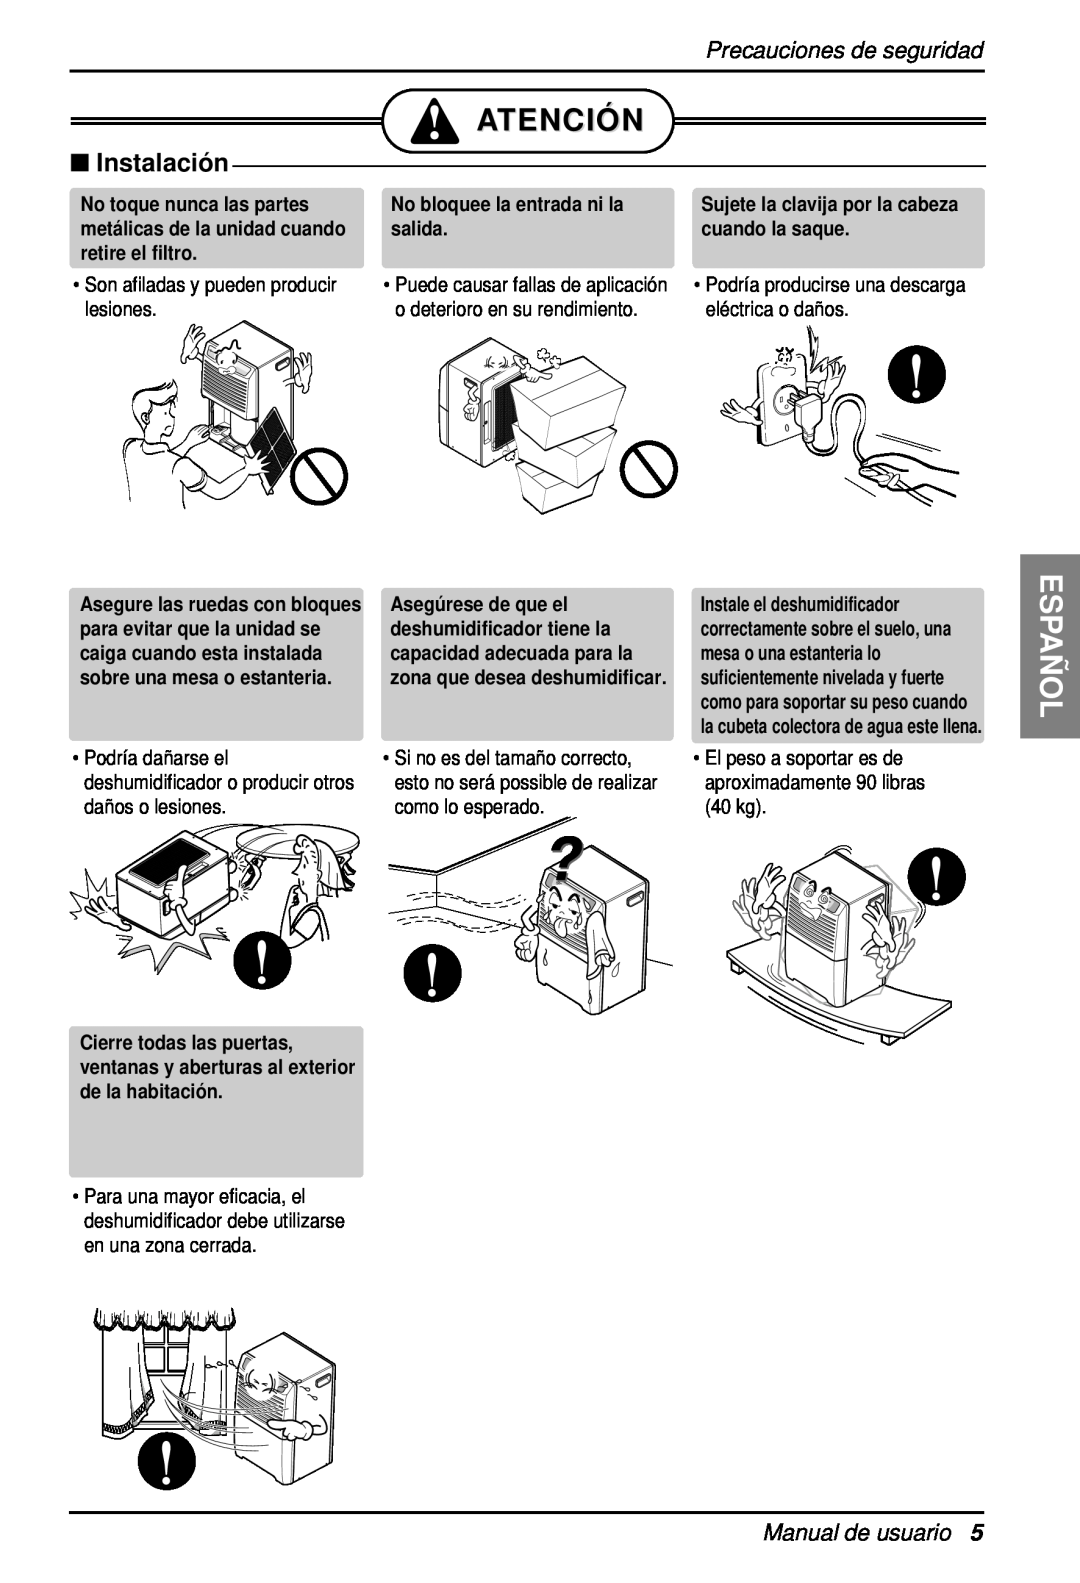 Heat Controller BHD-301 manual Atenció N, Españ Ol, Precauciones de seguridad, Manual de usuario 